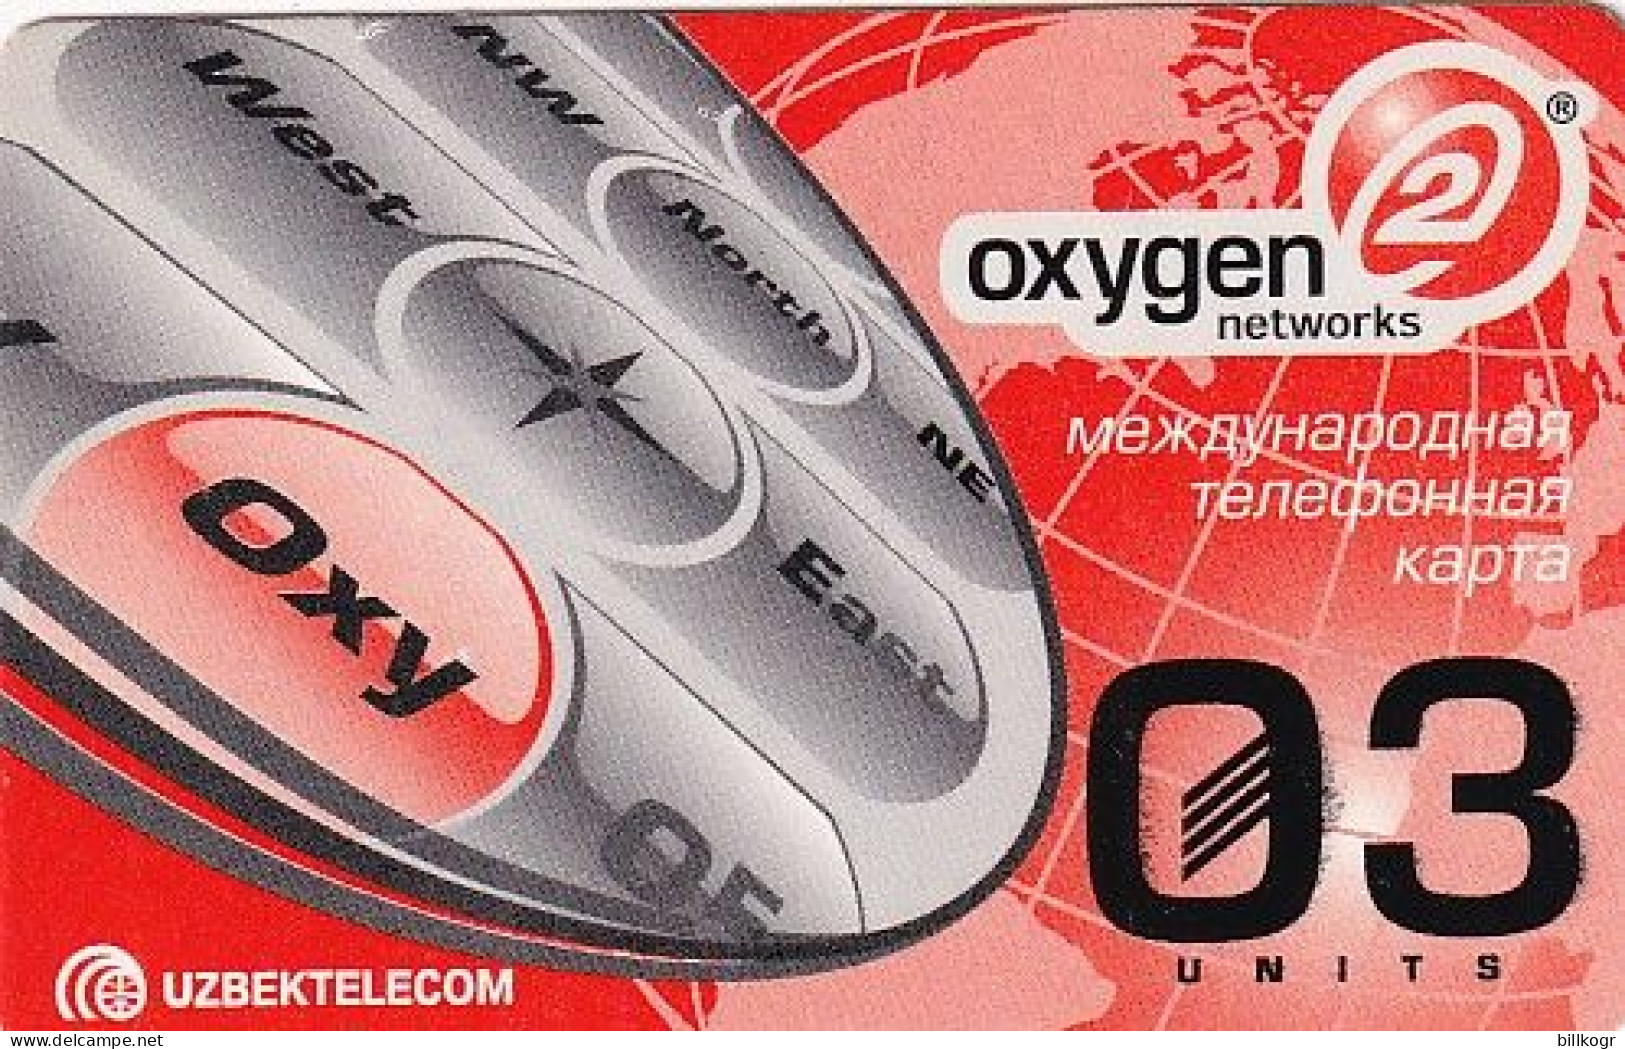 UZBEKISTAN - Oxygen 2 Networks, Uzbek Telecom Prepaid Card 03 Units, Used - Oezbekistan